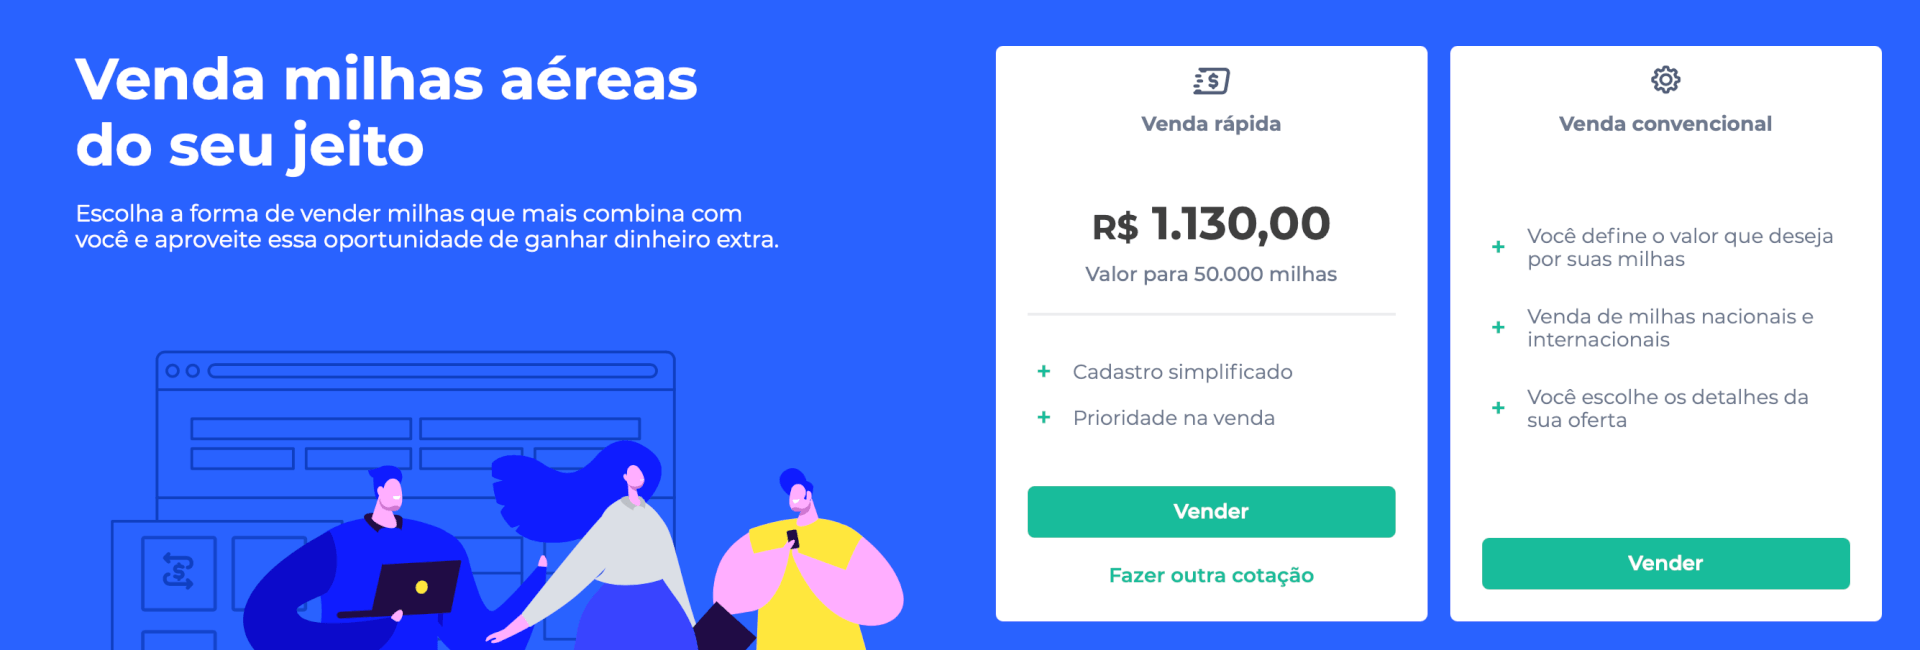 Simulação da venda de 50 mil pontos TudoAzul na MaxMilhas por Venda Rápida